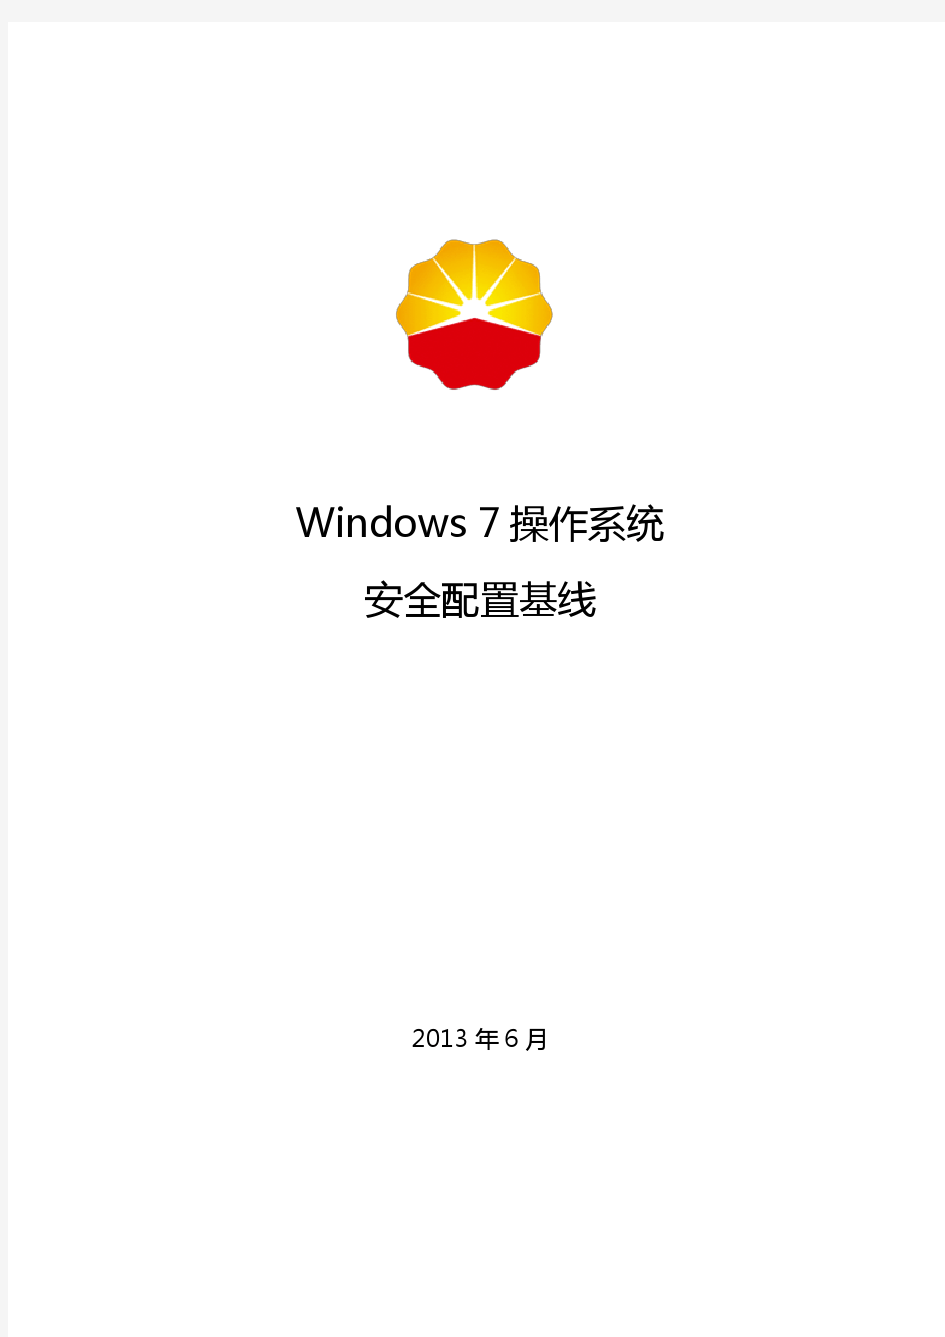 Windows 7操作系统安全配置基线